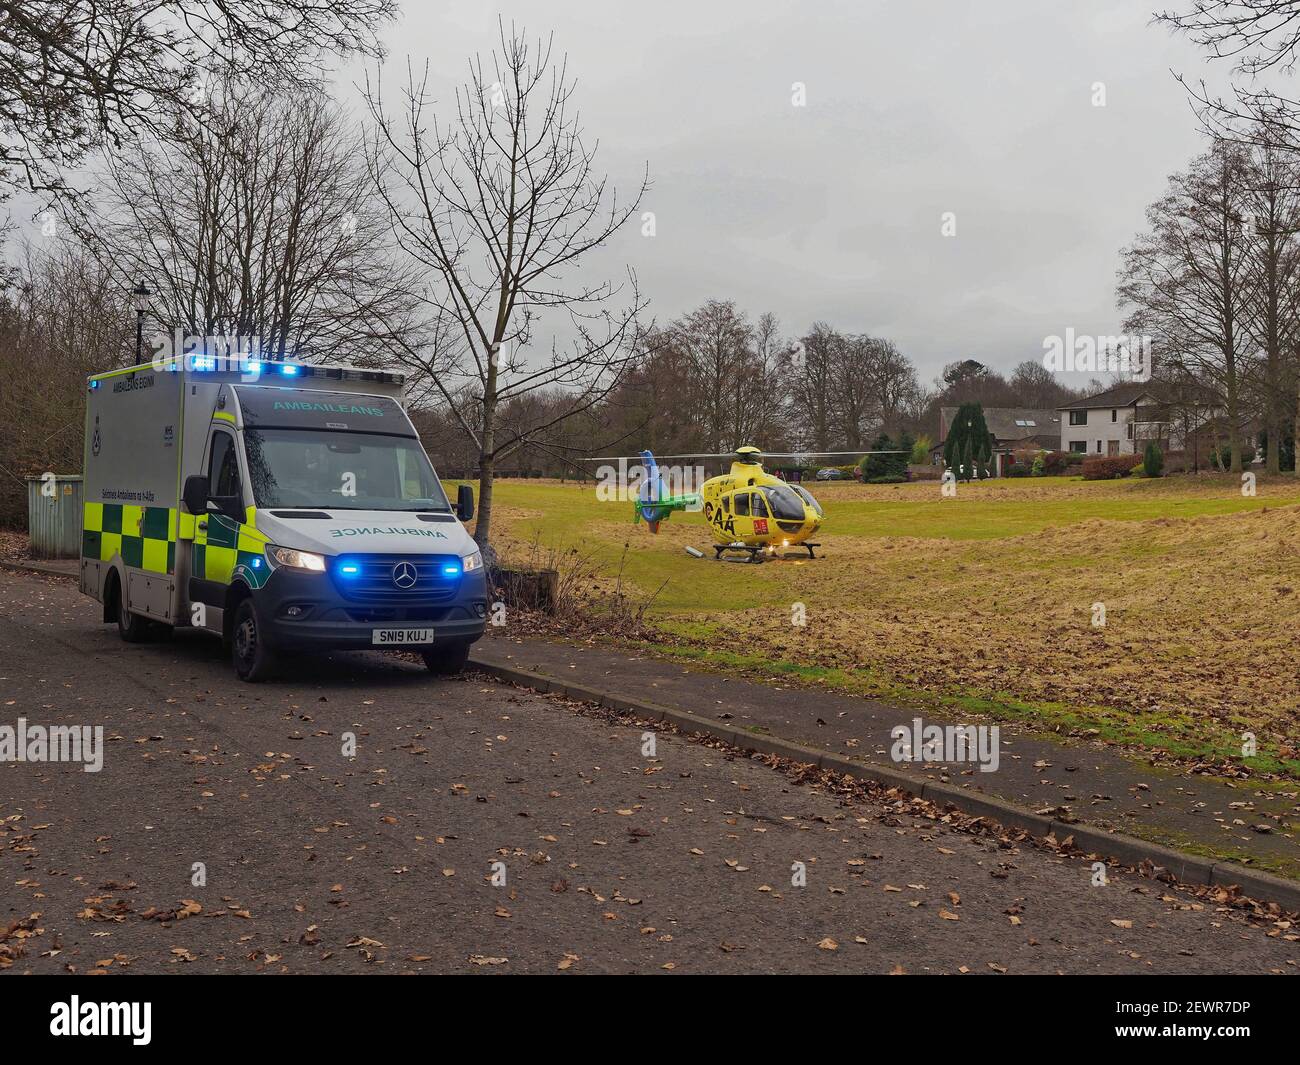 Letham Grange, Colliston, Écosse, Royaume-Uni, 3 mars 2021, Une ambulance aérienne SCAA au parcours de golf Letham Grange Old Golf course qui prend une voiture après un accident. Banque D'Images